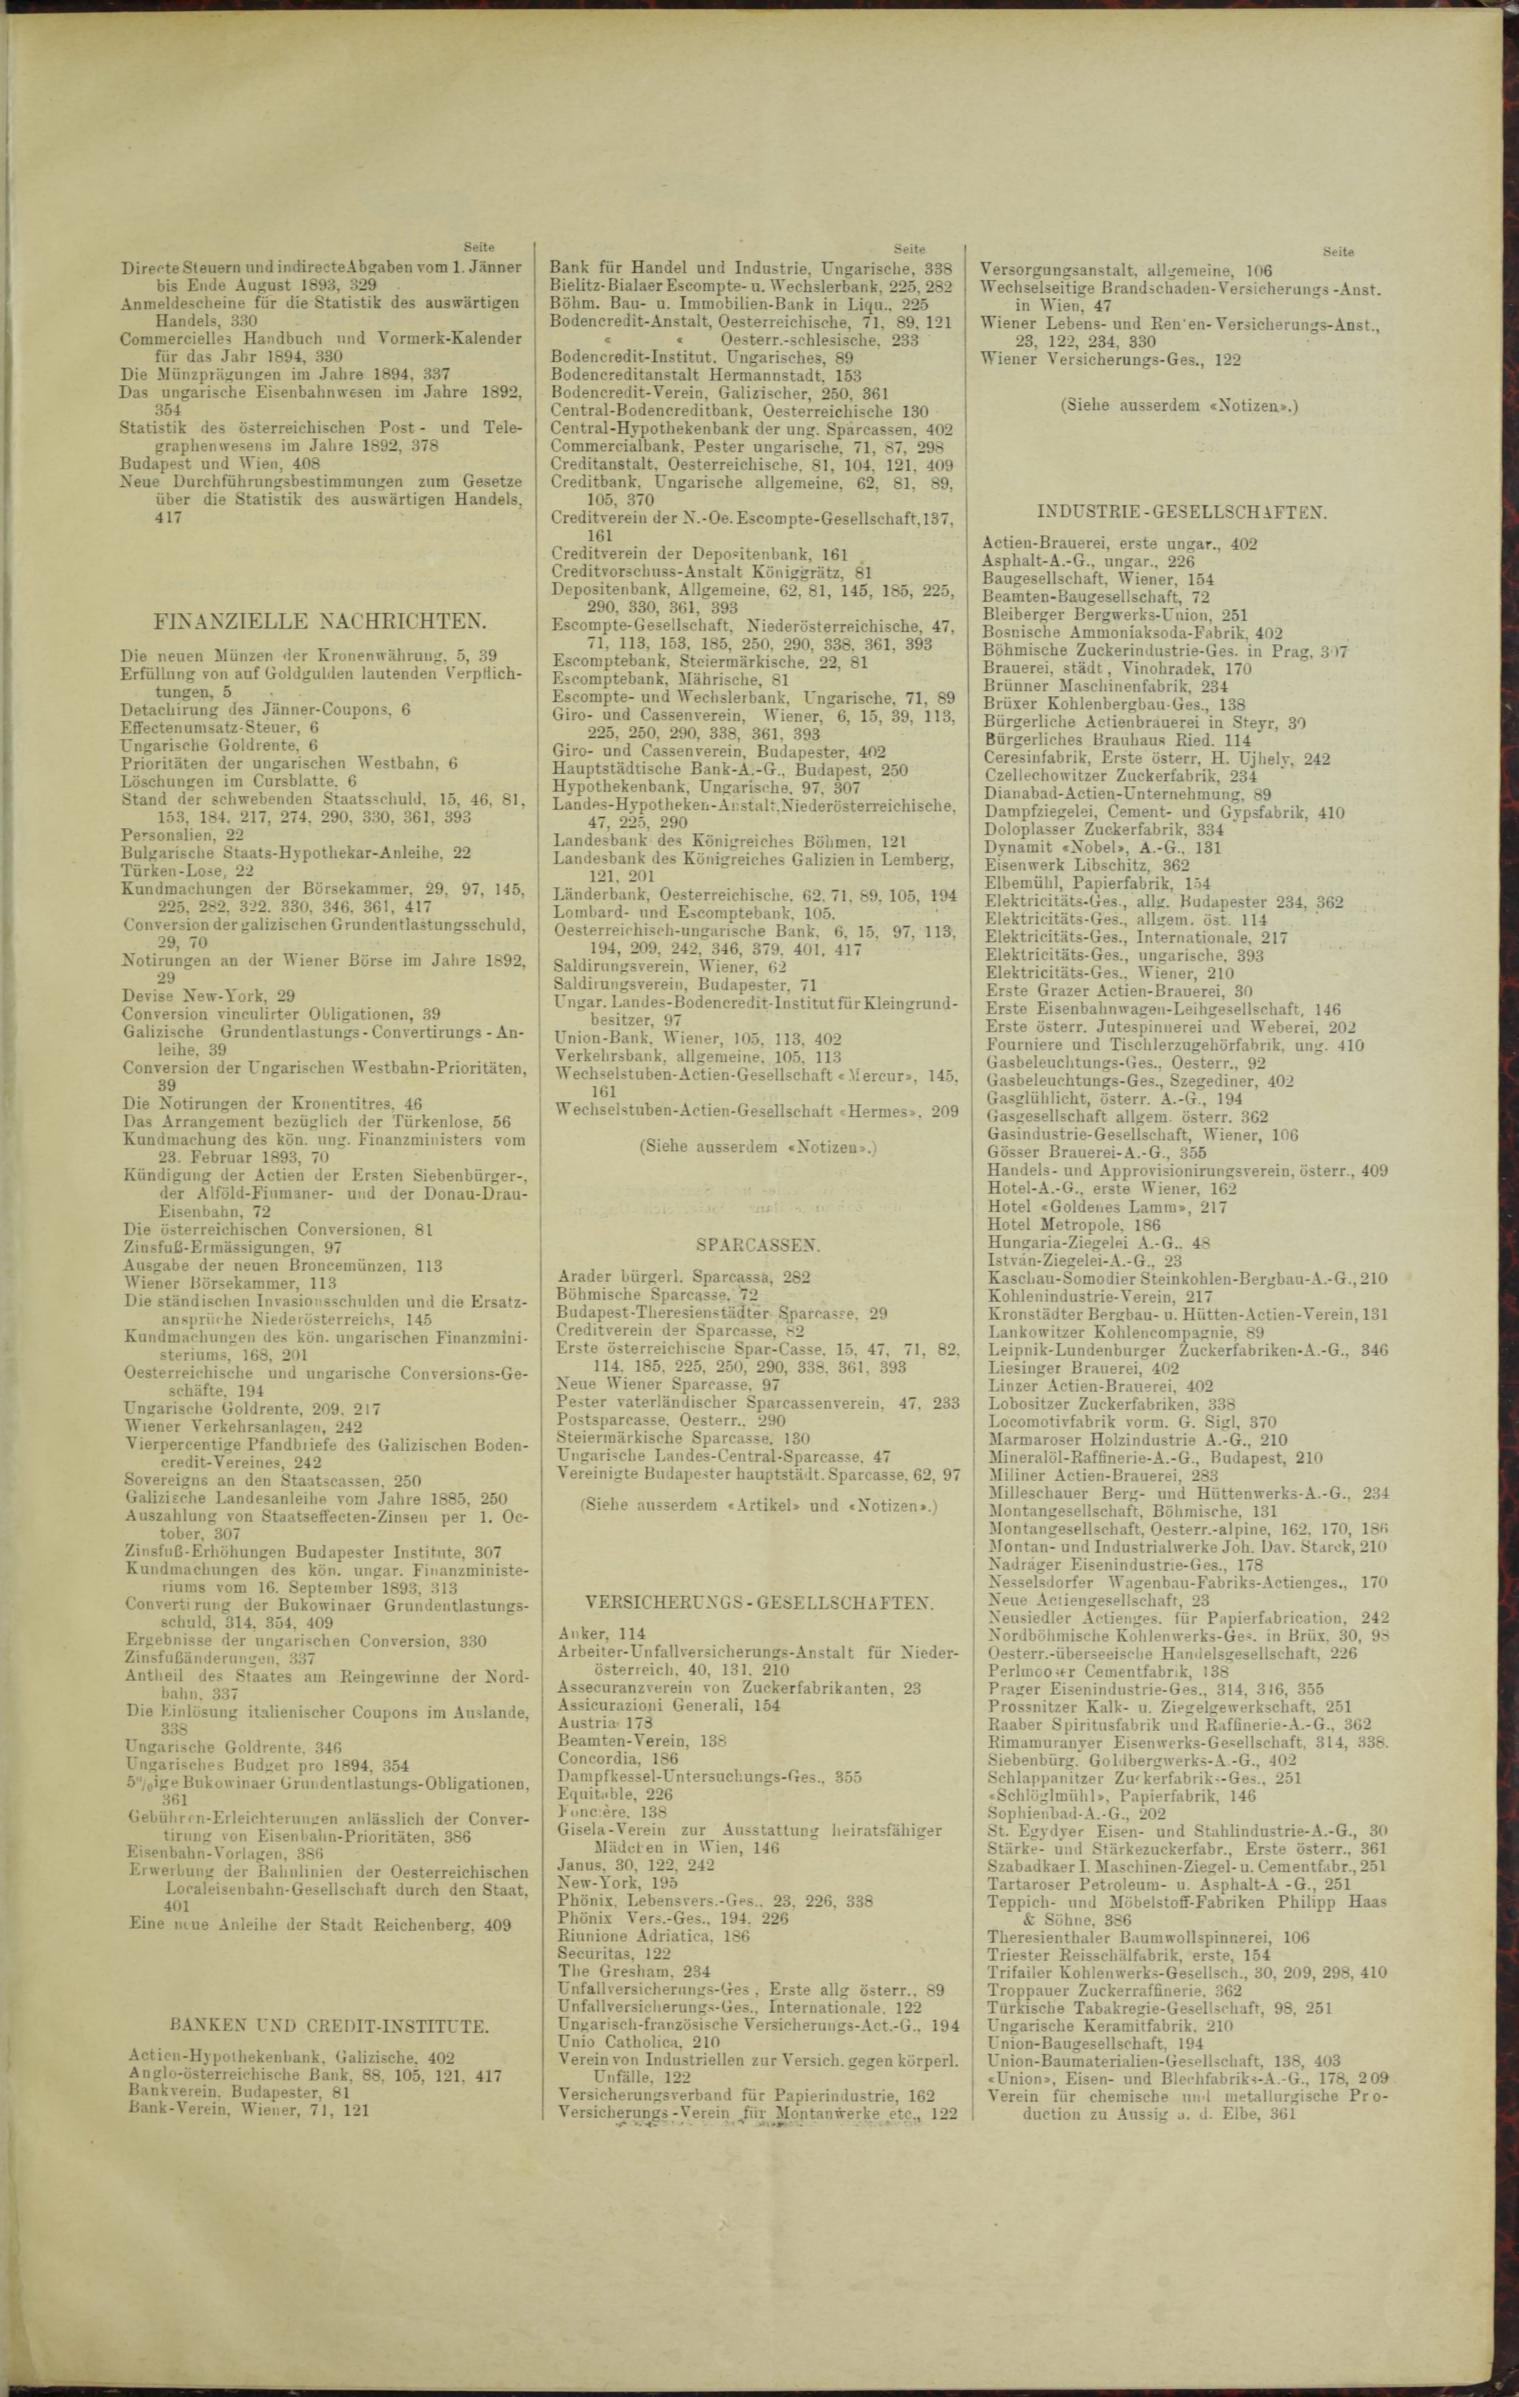 Der Tresor 15.06.1893 - Seite 11